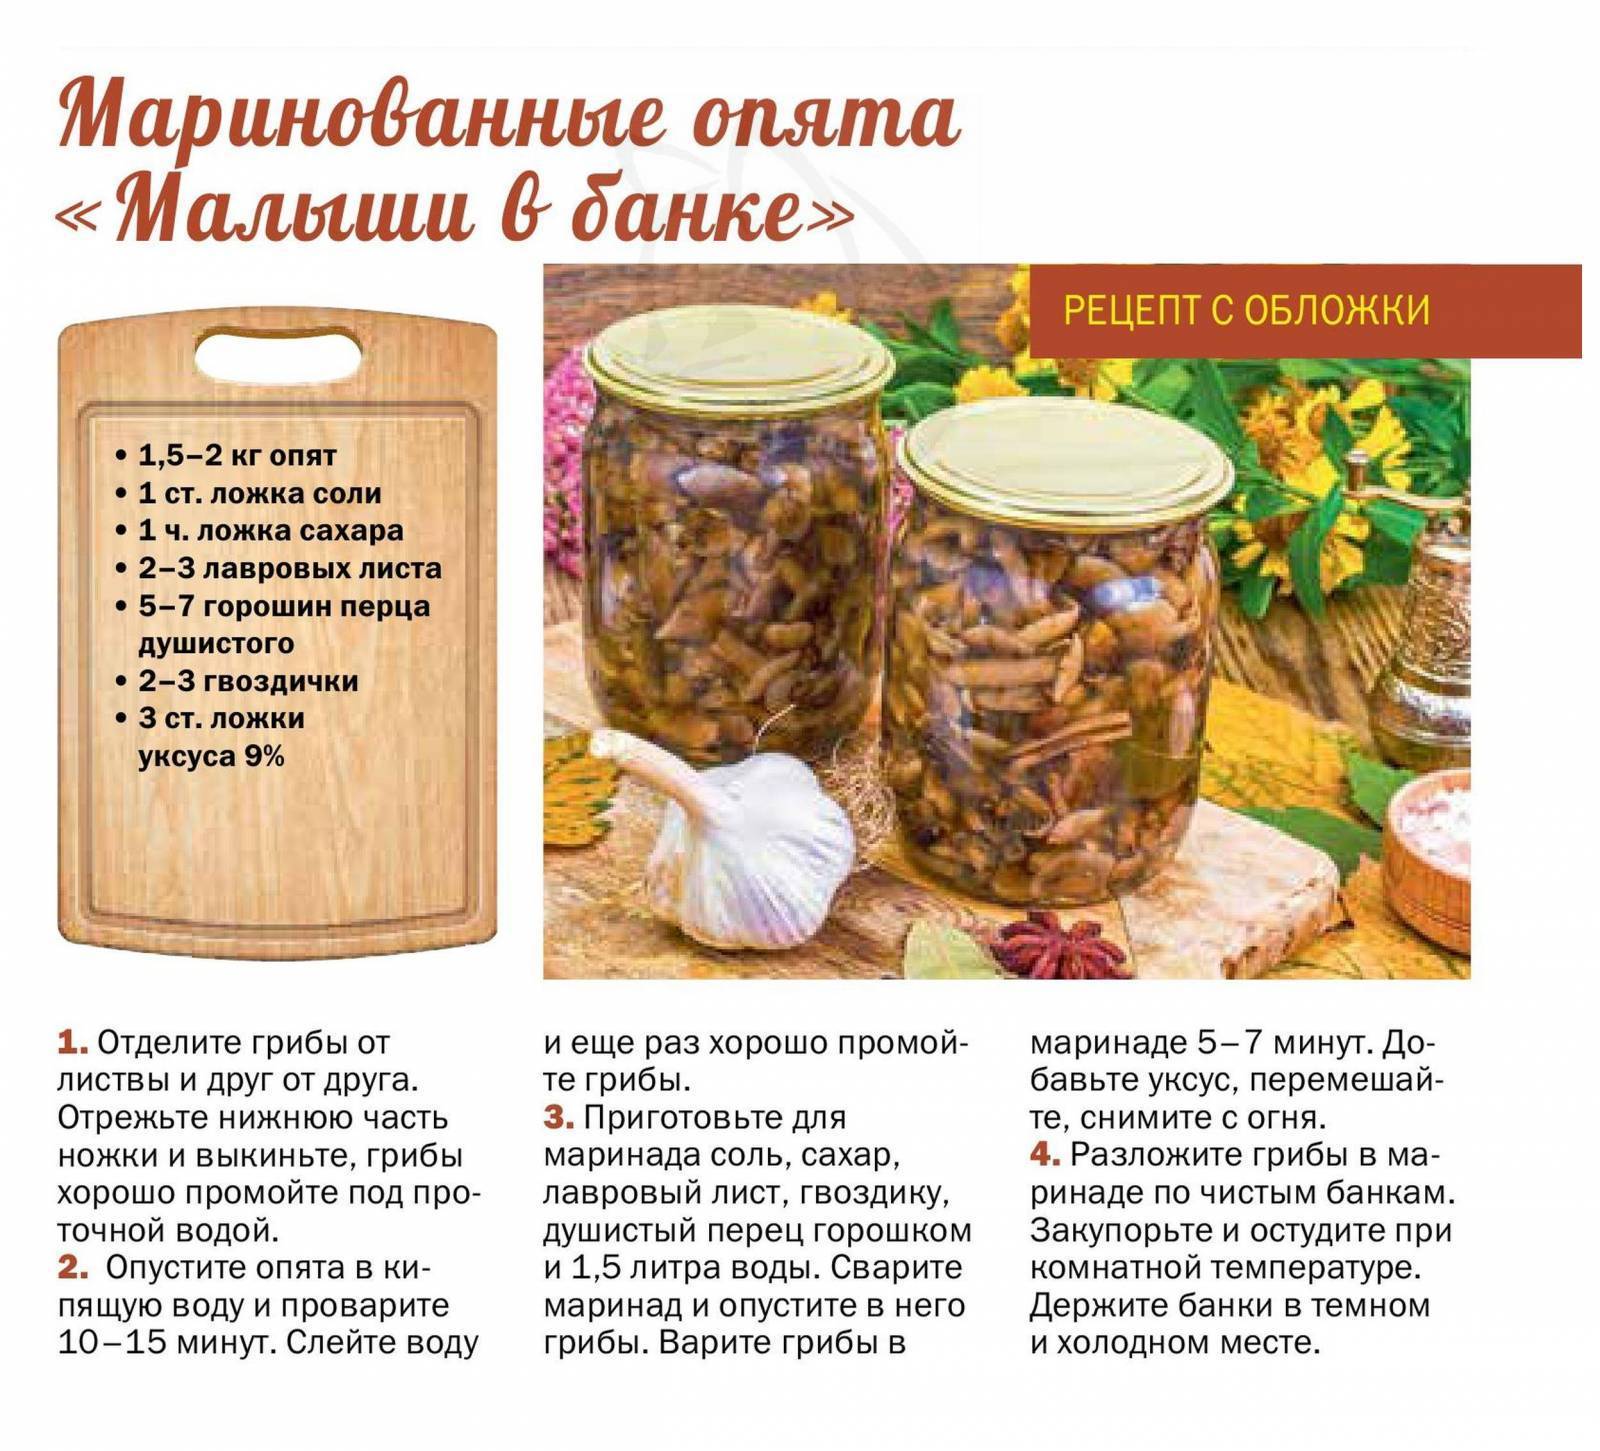 Самые вкусные и быстрые рецепты маринованных шампиньонов на зиму: топ-10 лучших способов заготовки грибов